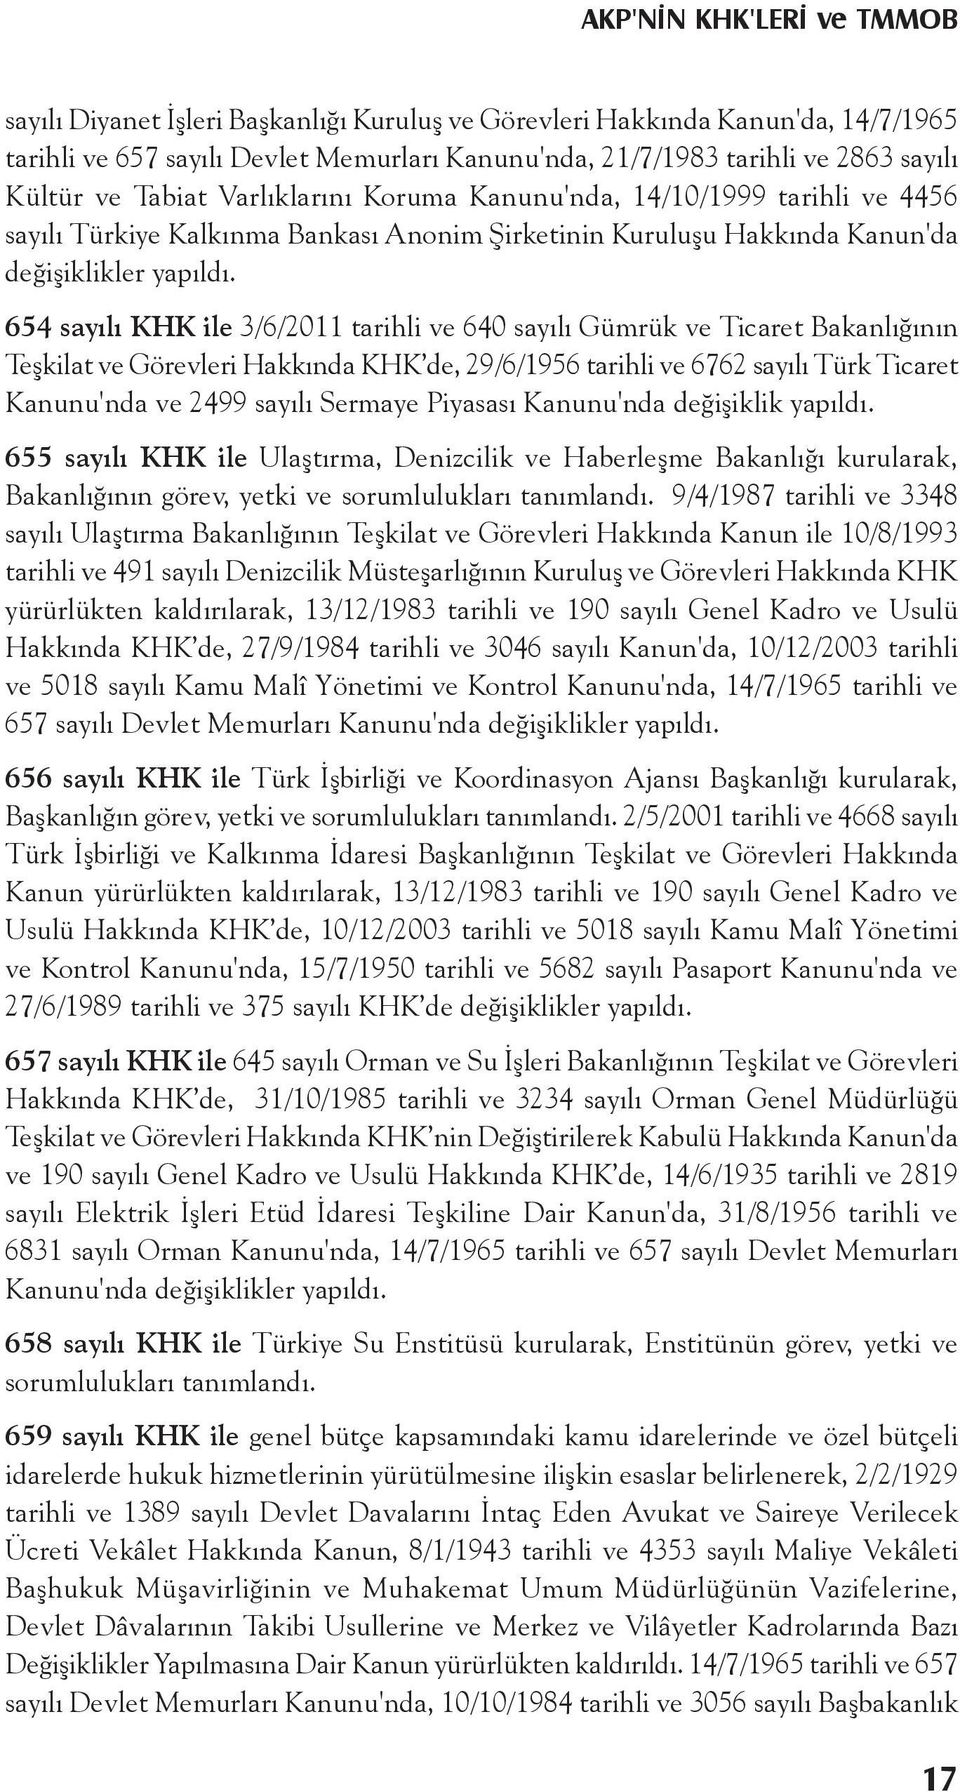 654 sayılı KHK ile 3/6/2011 tarihli ve 640 sayılı Gümrük ve Ticaret Bakanlığının Teşkilat ve Görevleri Hakkında KHK de, 29/6/1956 tarihli ve 6762 sayılı Türk Ticaret Kanunu'nda ve 2499 sayılı Sermaye